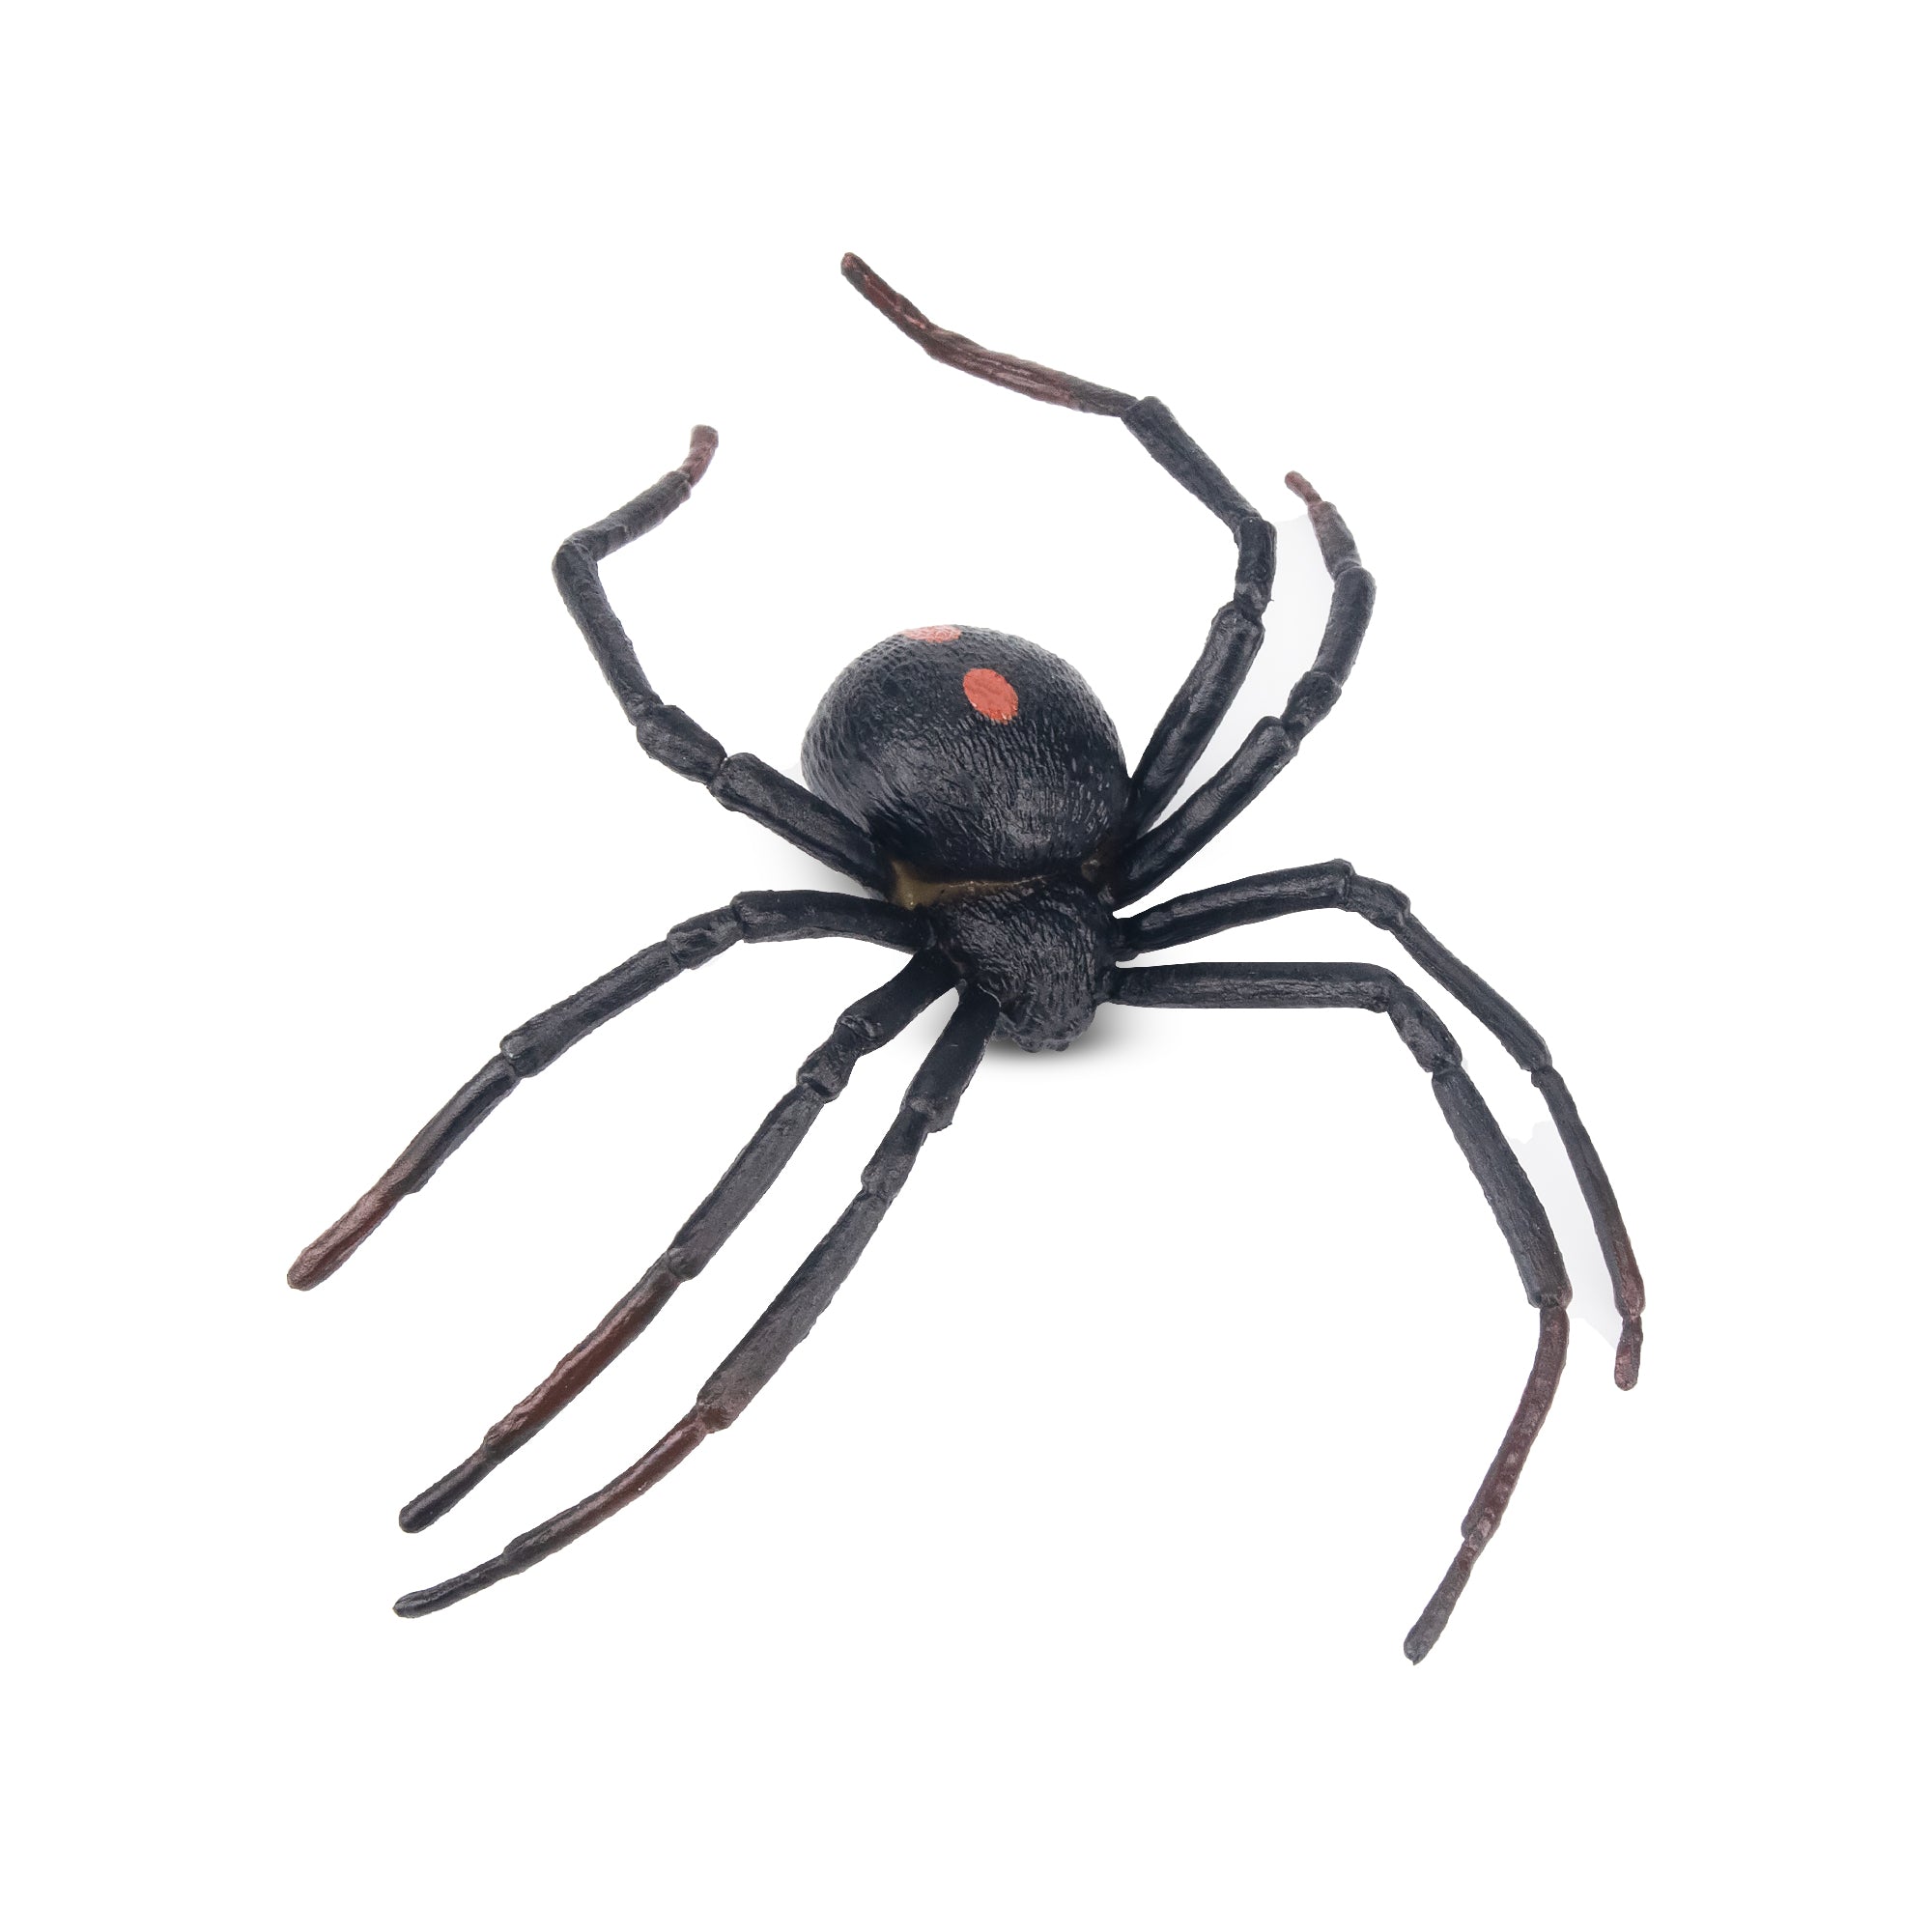 Toymany Black Widow Spider Figurine Toy